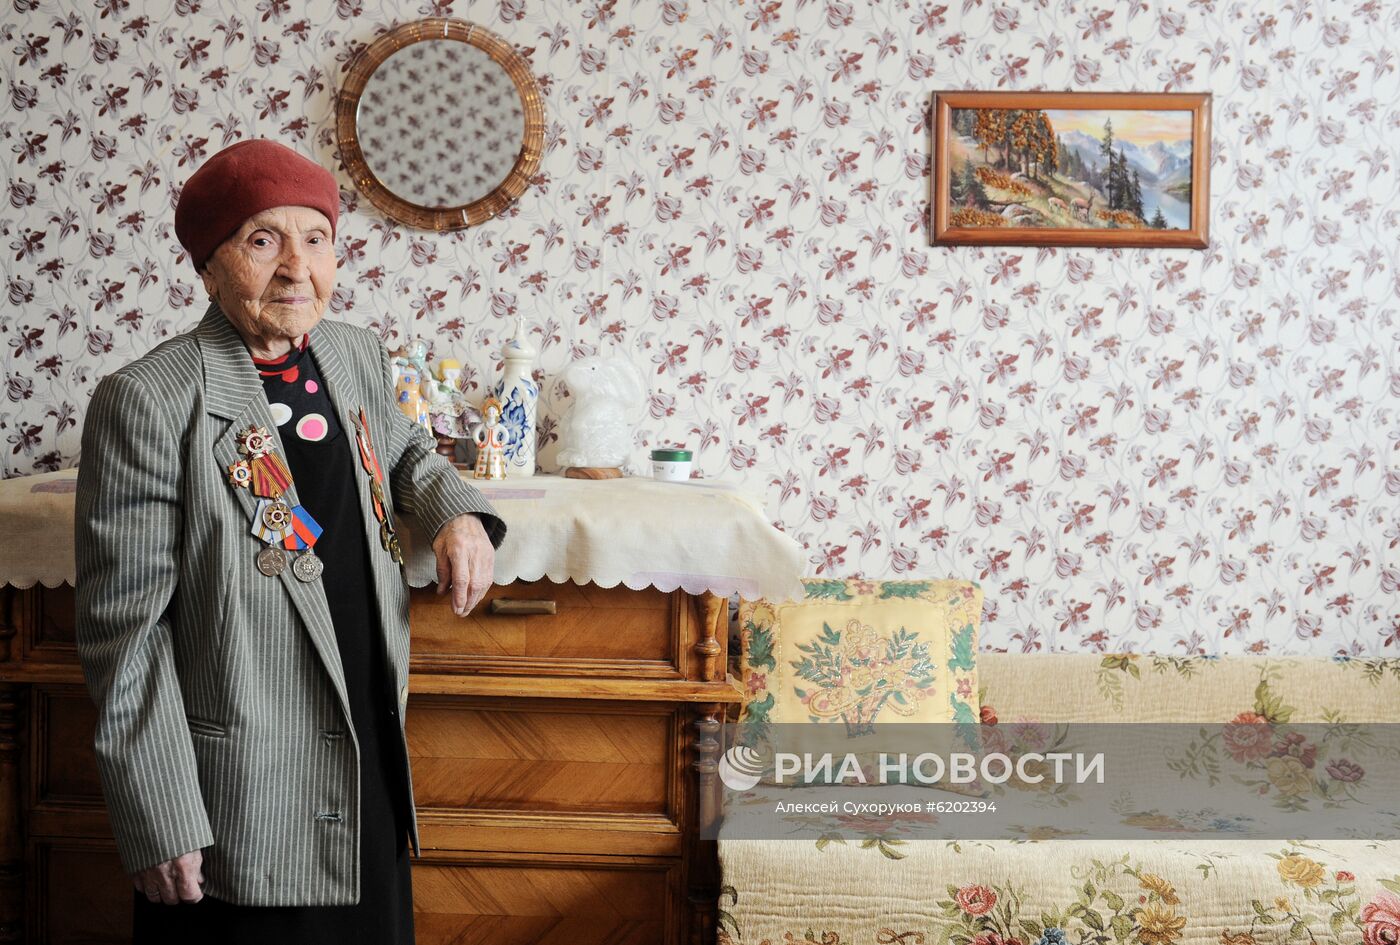 Ветеран Великой Отечественной войны М. С. Суркова